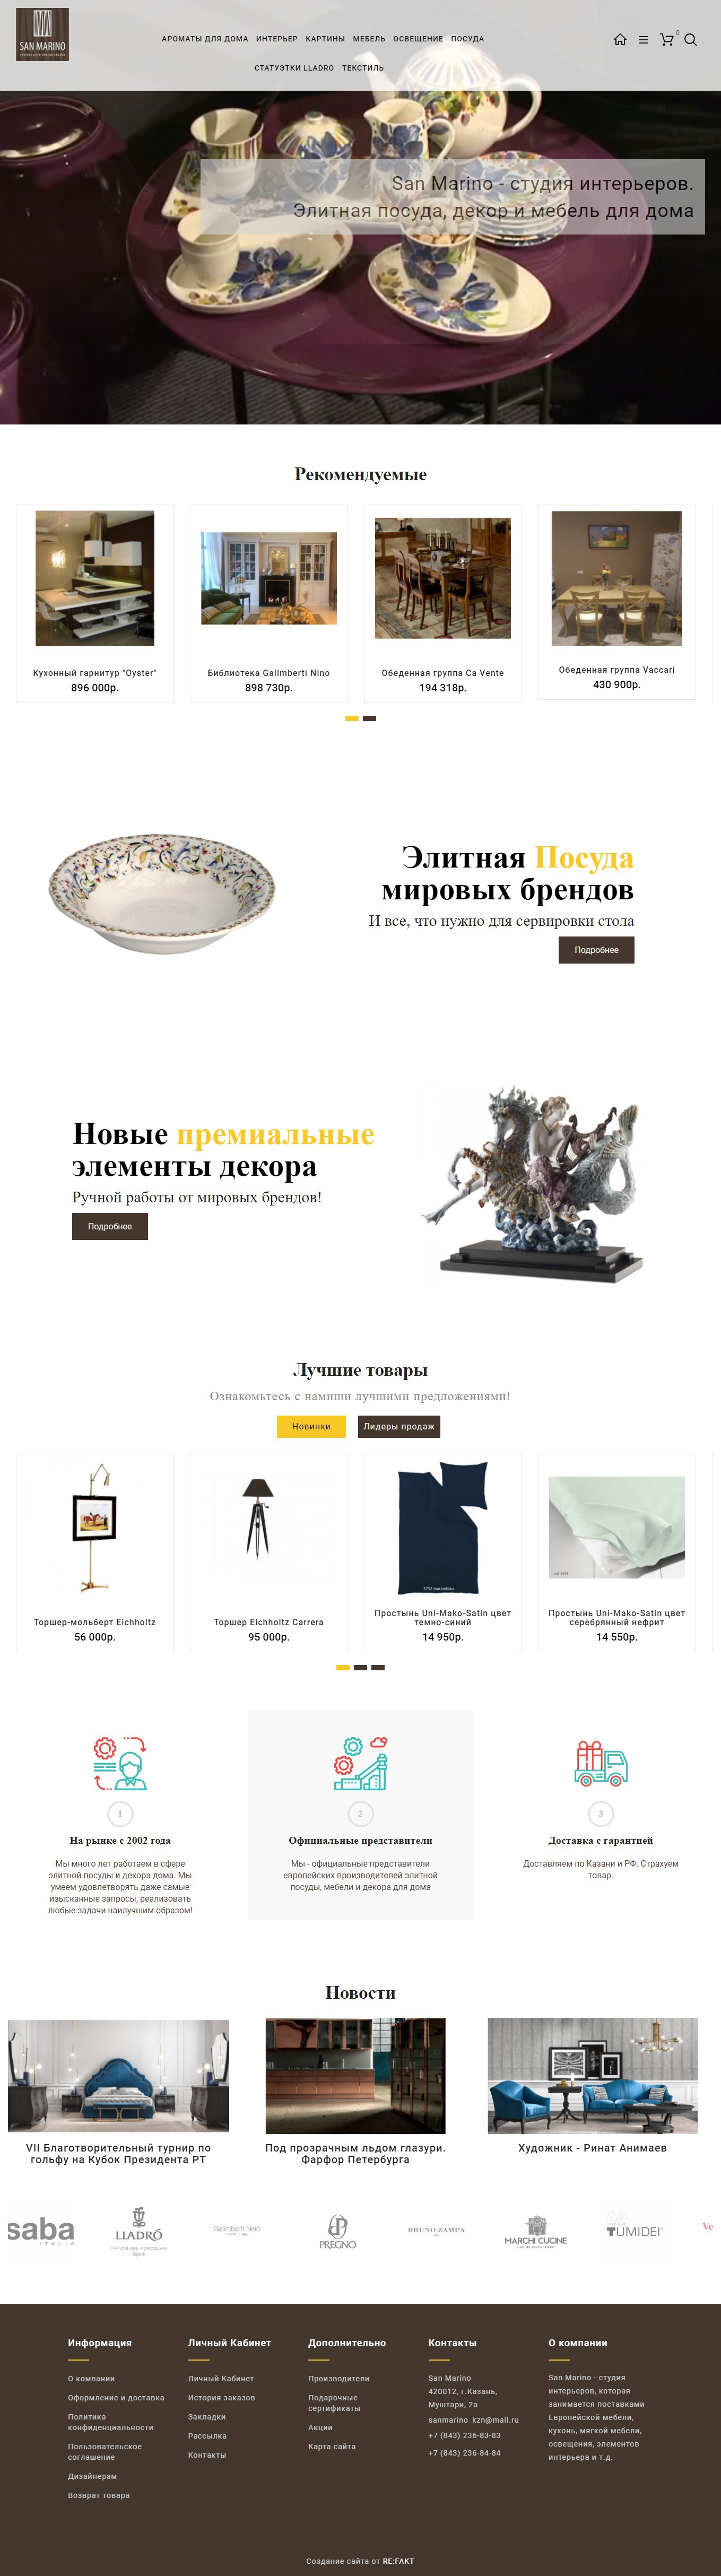 Дизайн главной страницы интернет-магазина студии интерьеров СанМарино